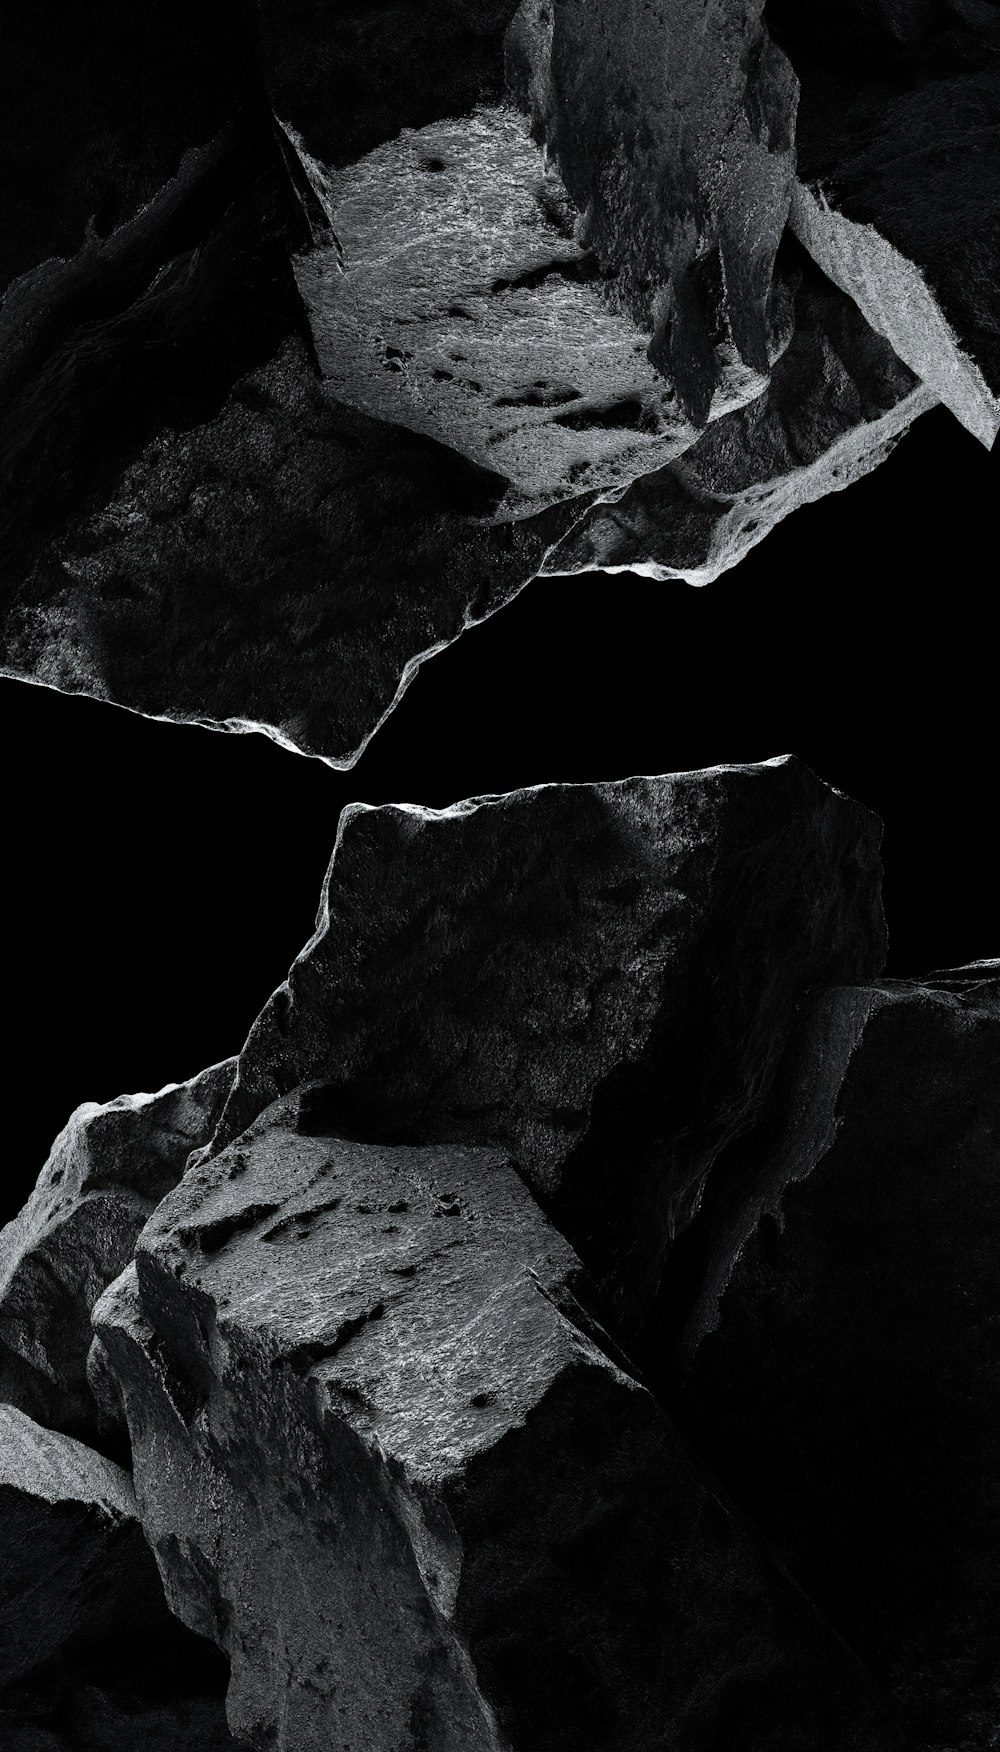 uma foto em preto e branco de algumas rochas